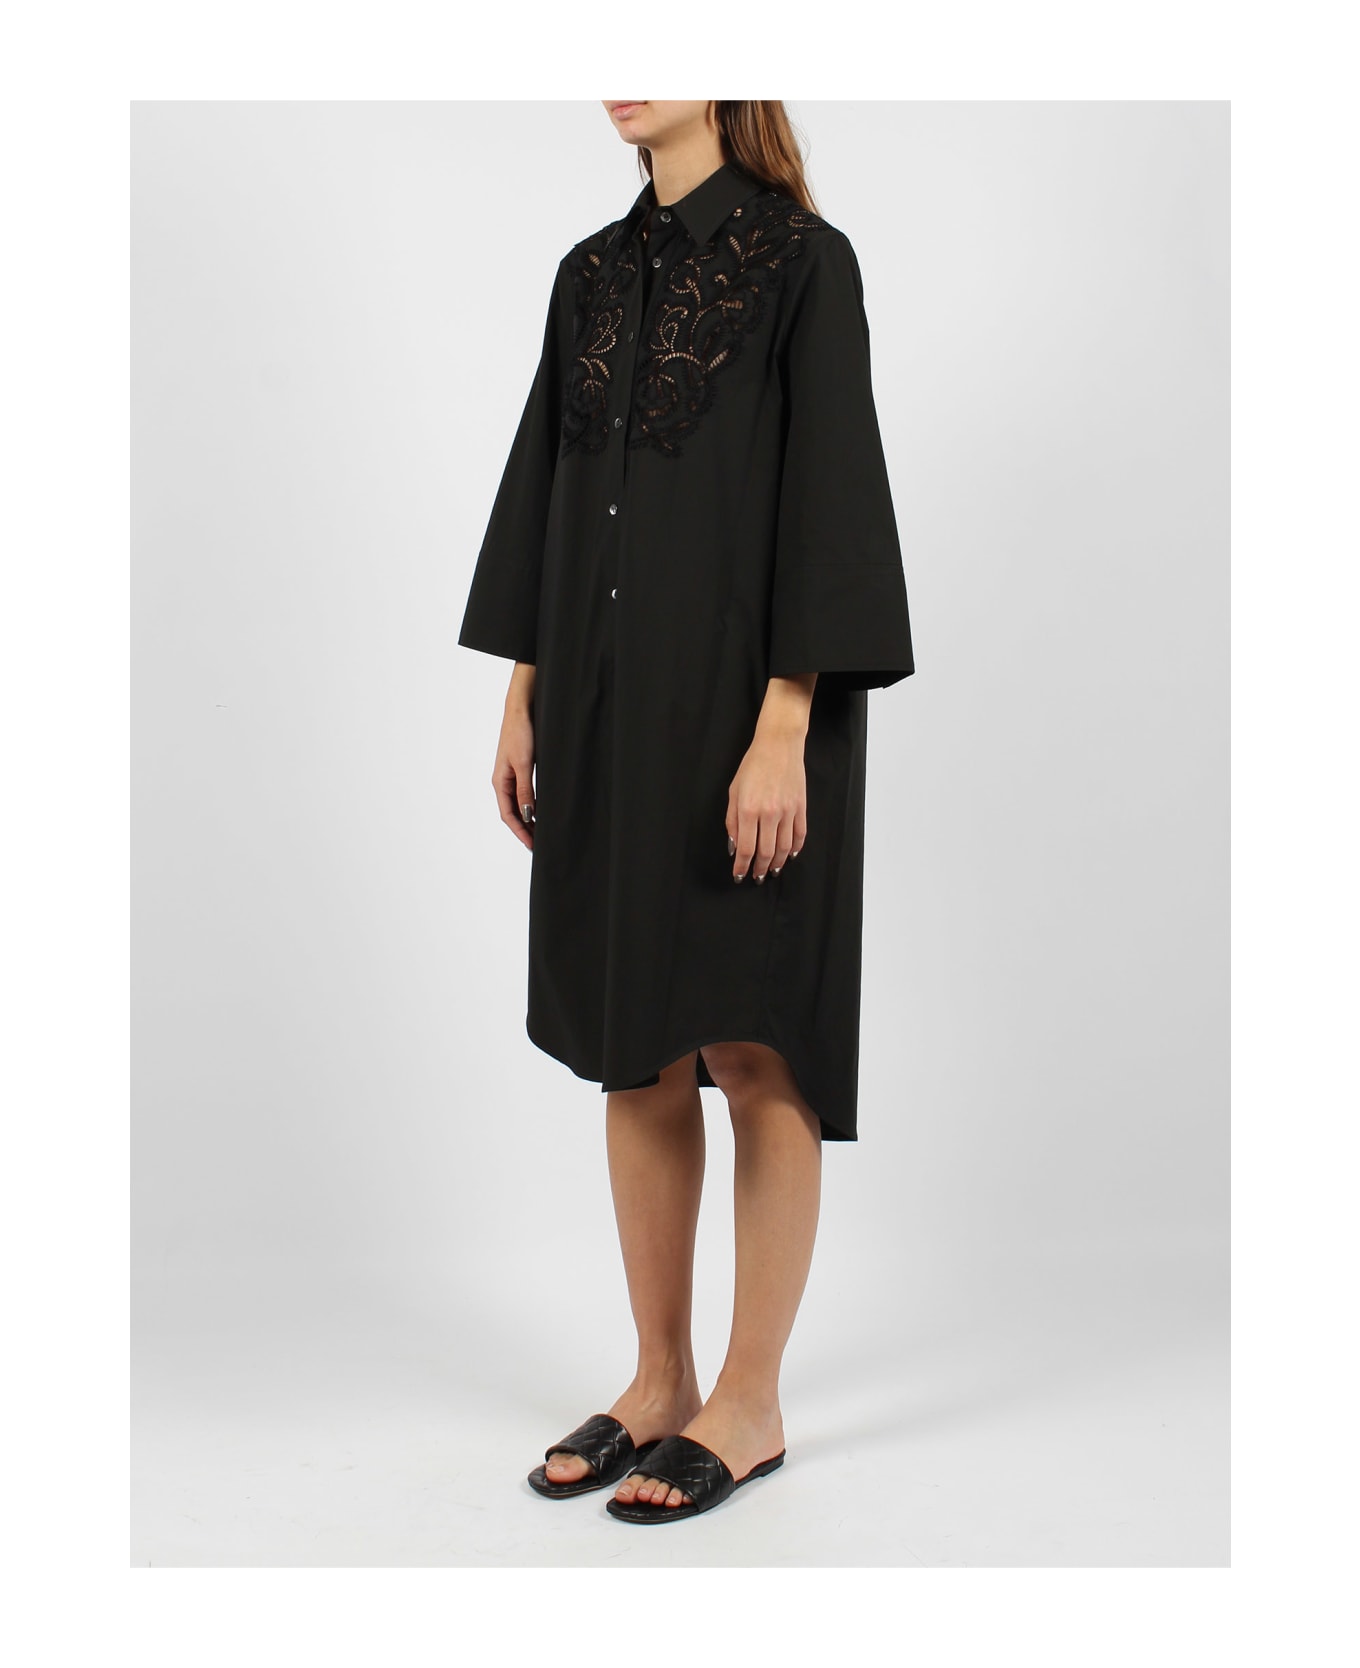 Parosh Canyox Lace Embroidery Shirt Dress - Black